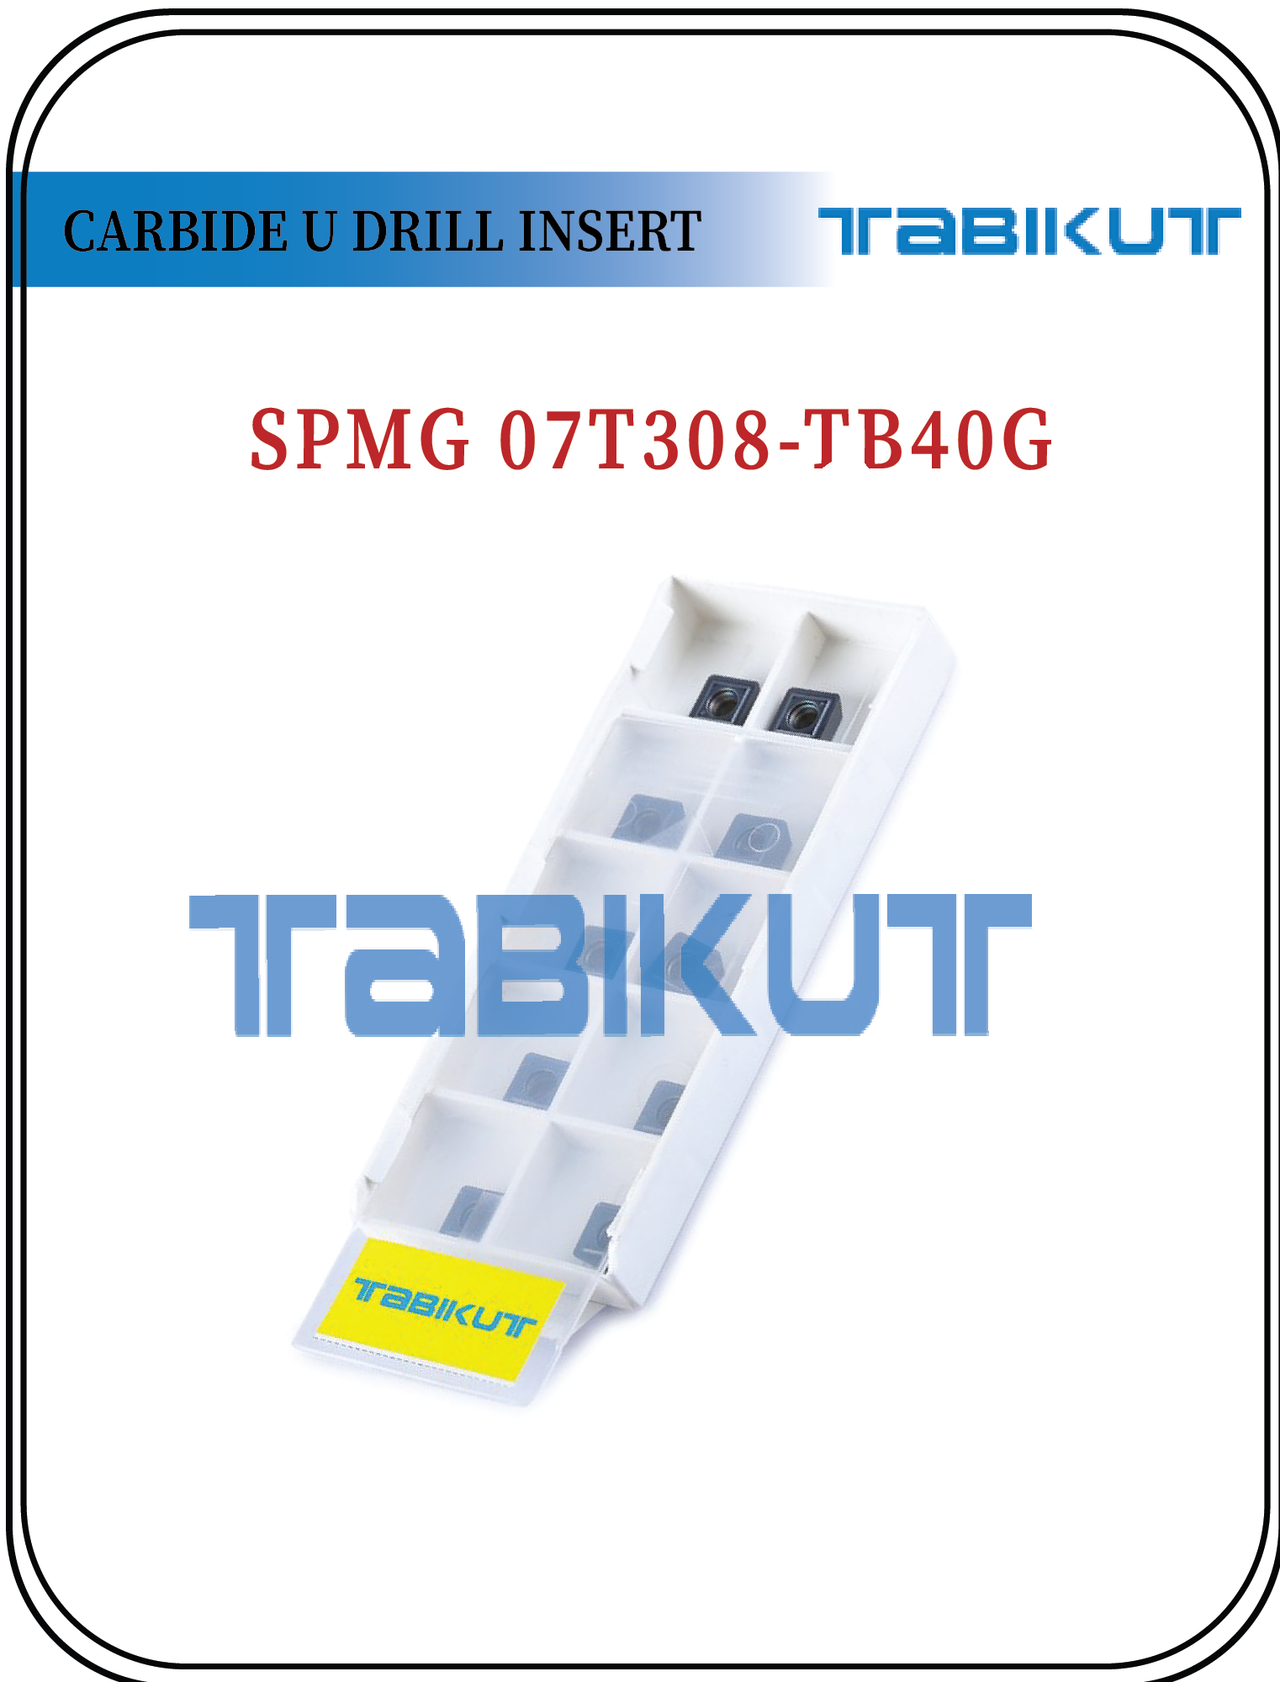 SPMG07T308 TABIKUT Carbide Drilling Insert